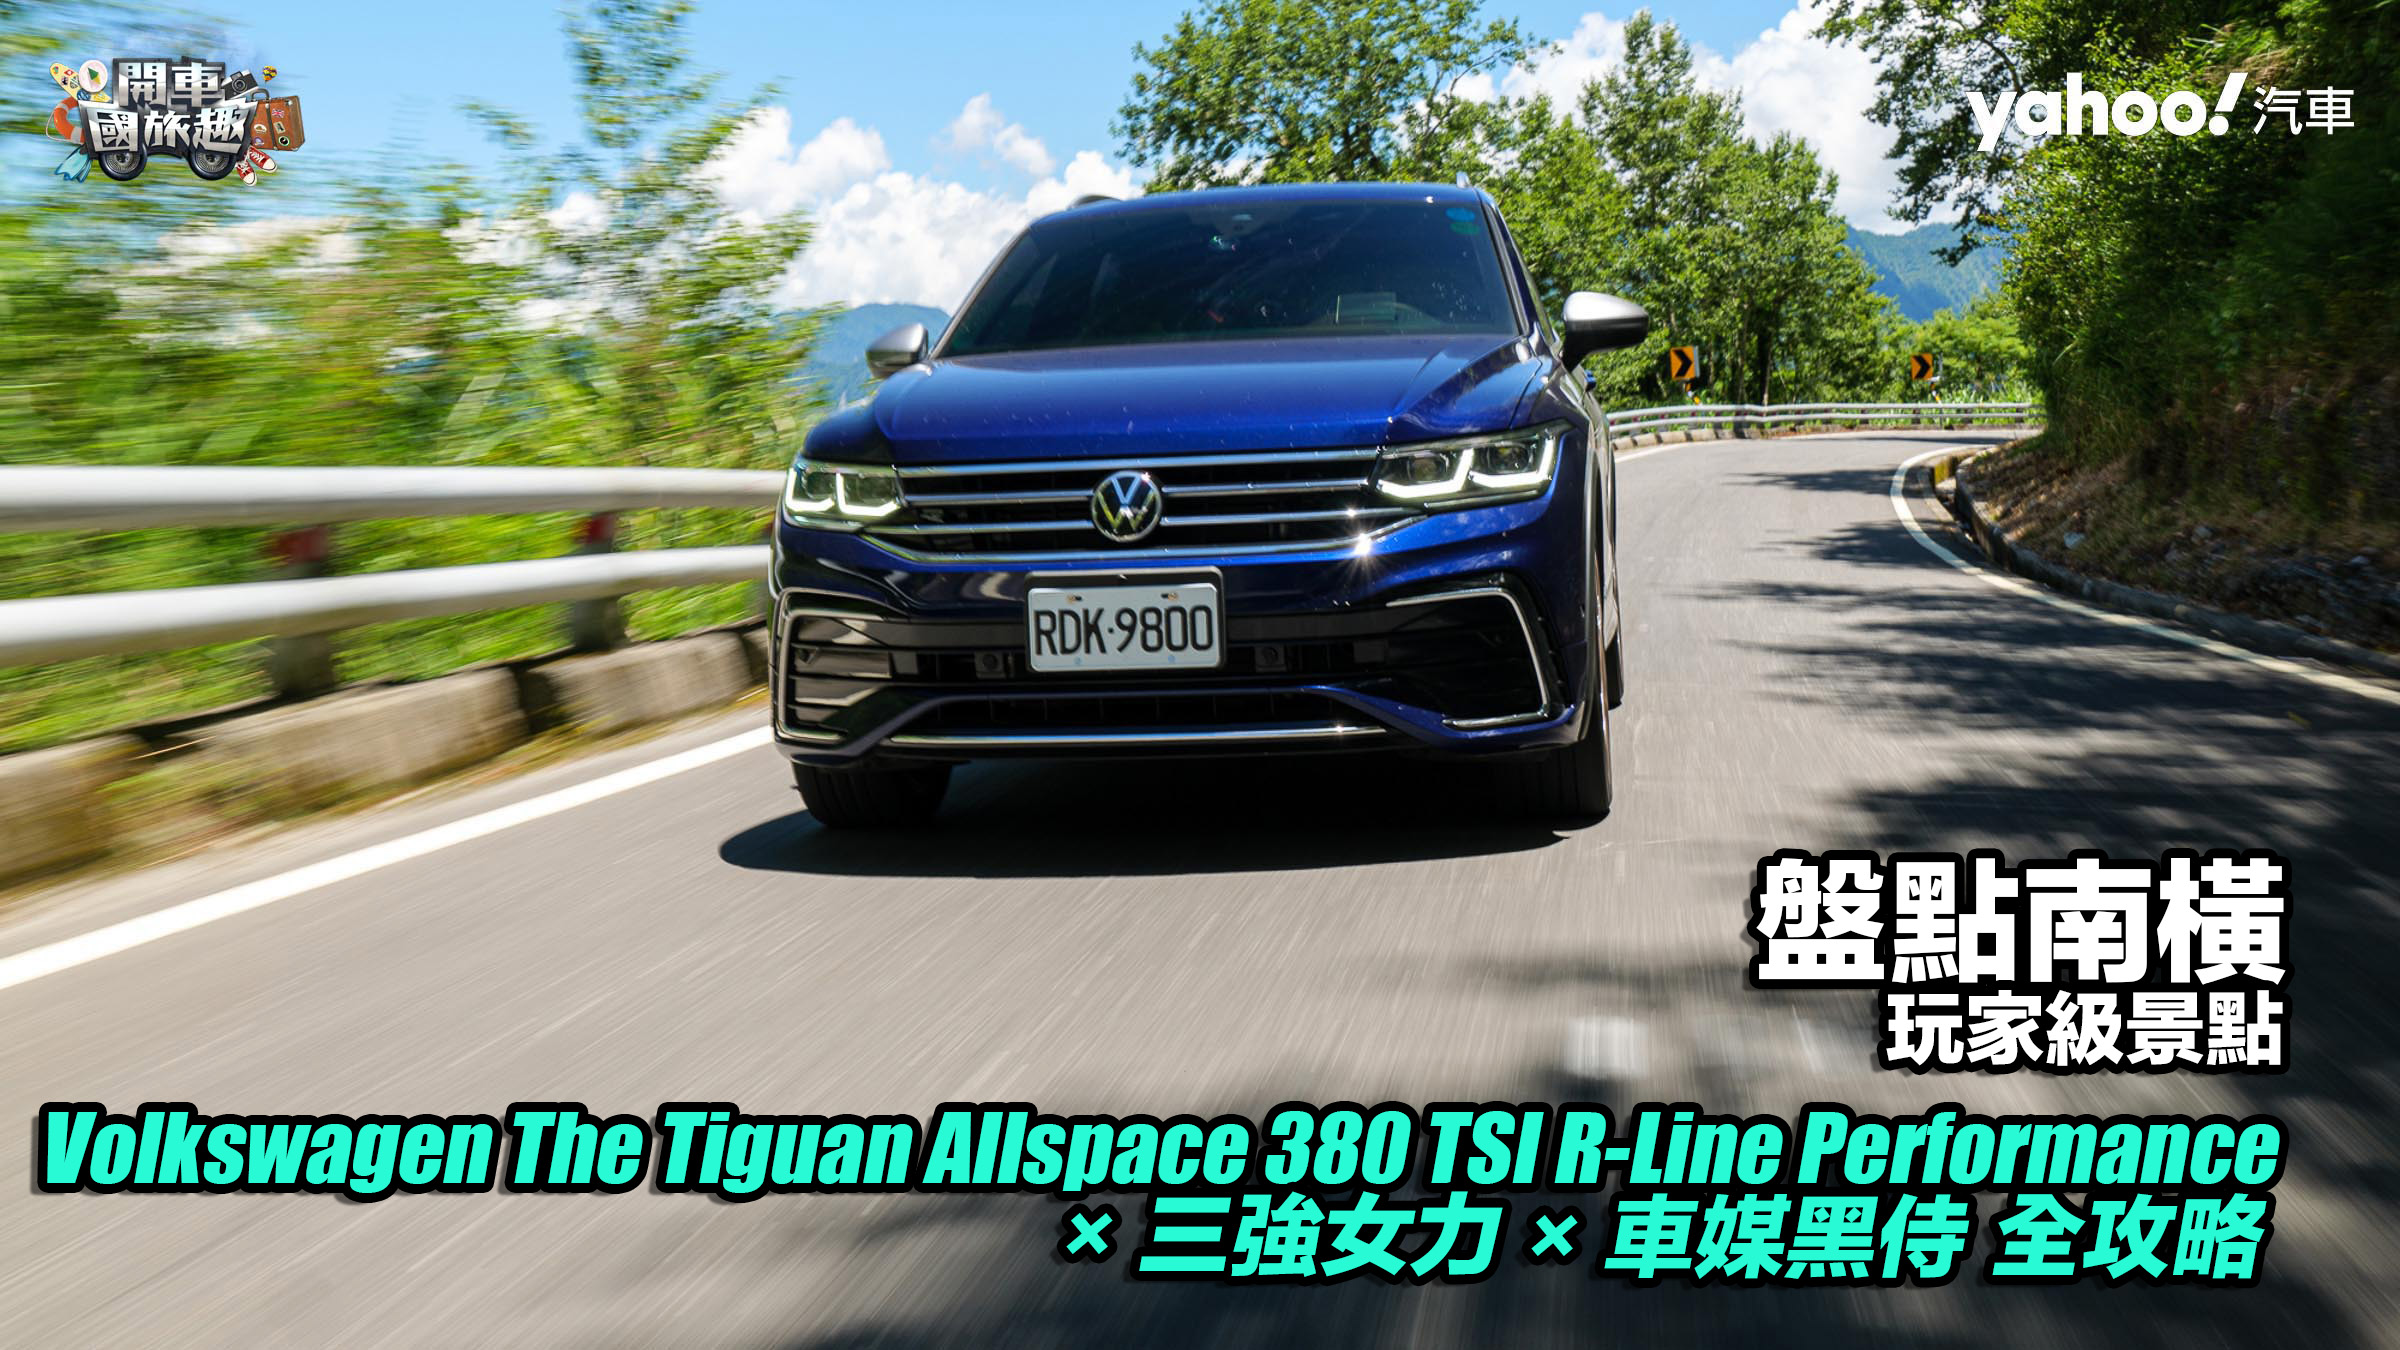 【開車國旅趣】盤點南橫玩家級景點！Volkswagen The Tiguan Allspace 380 TSI R-Line Performance × 三強女力× 車媒黑侍逆走何處去？